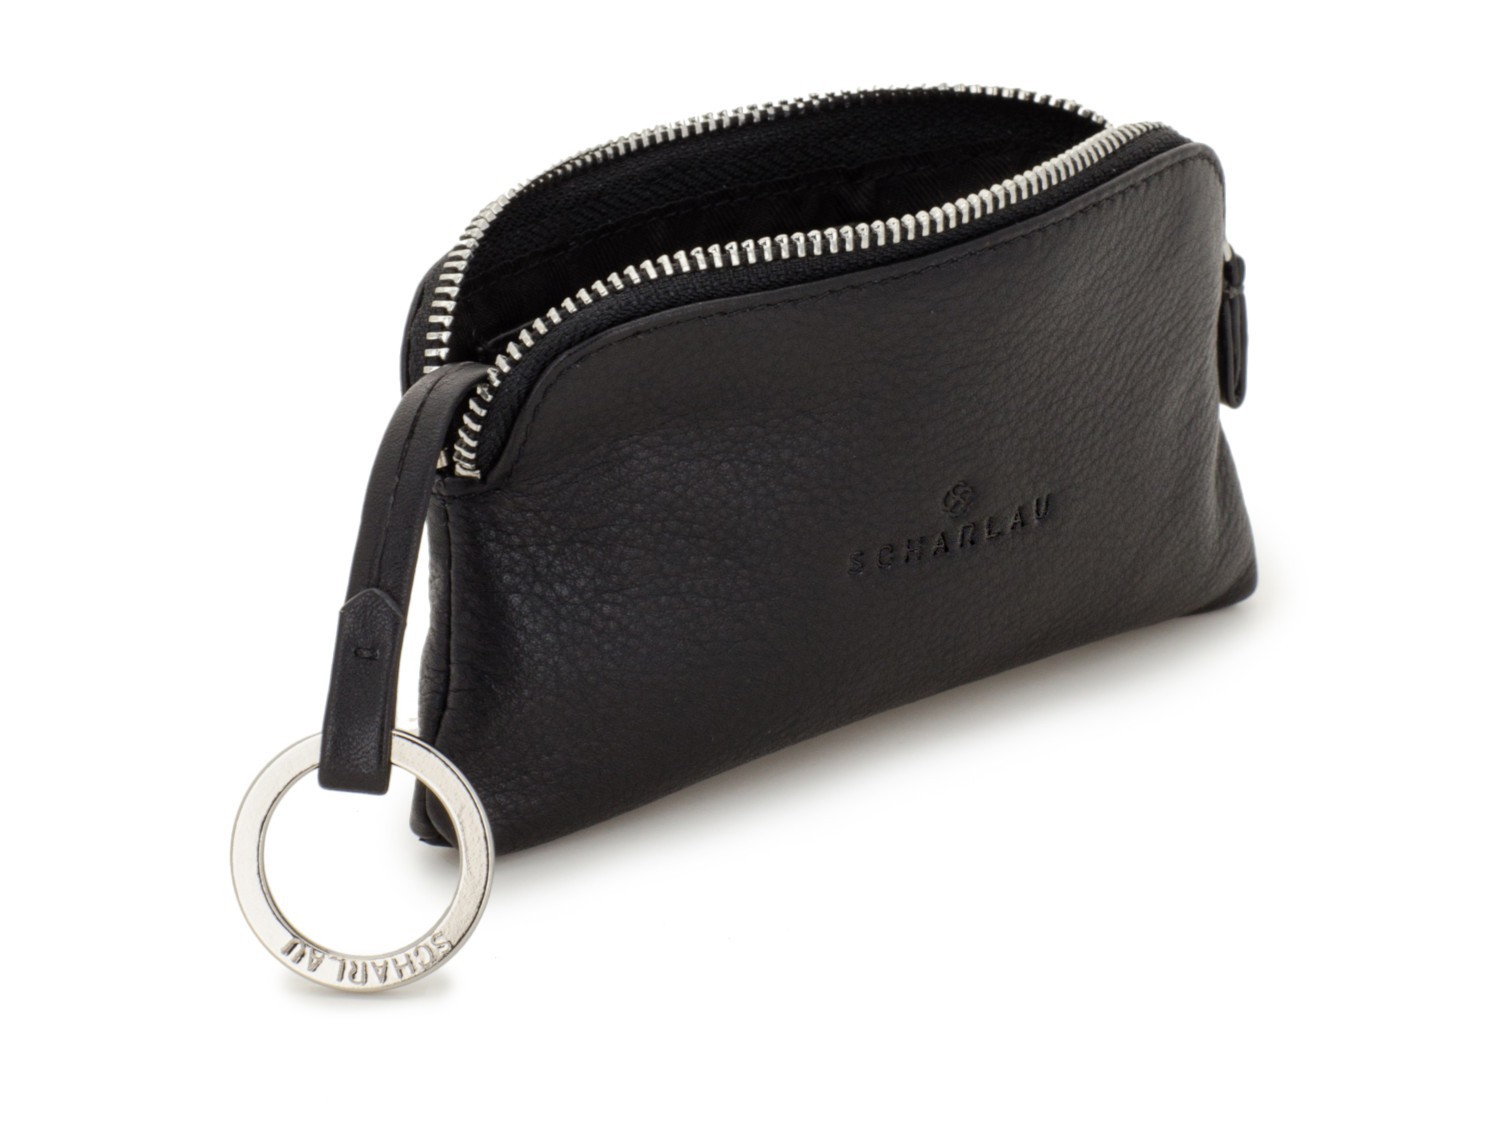 leather key holder wallet open